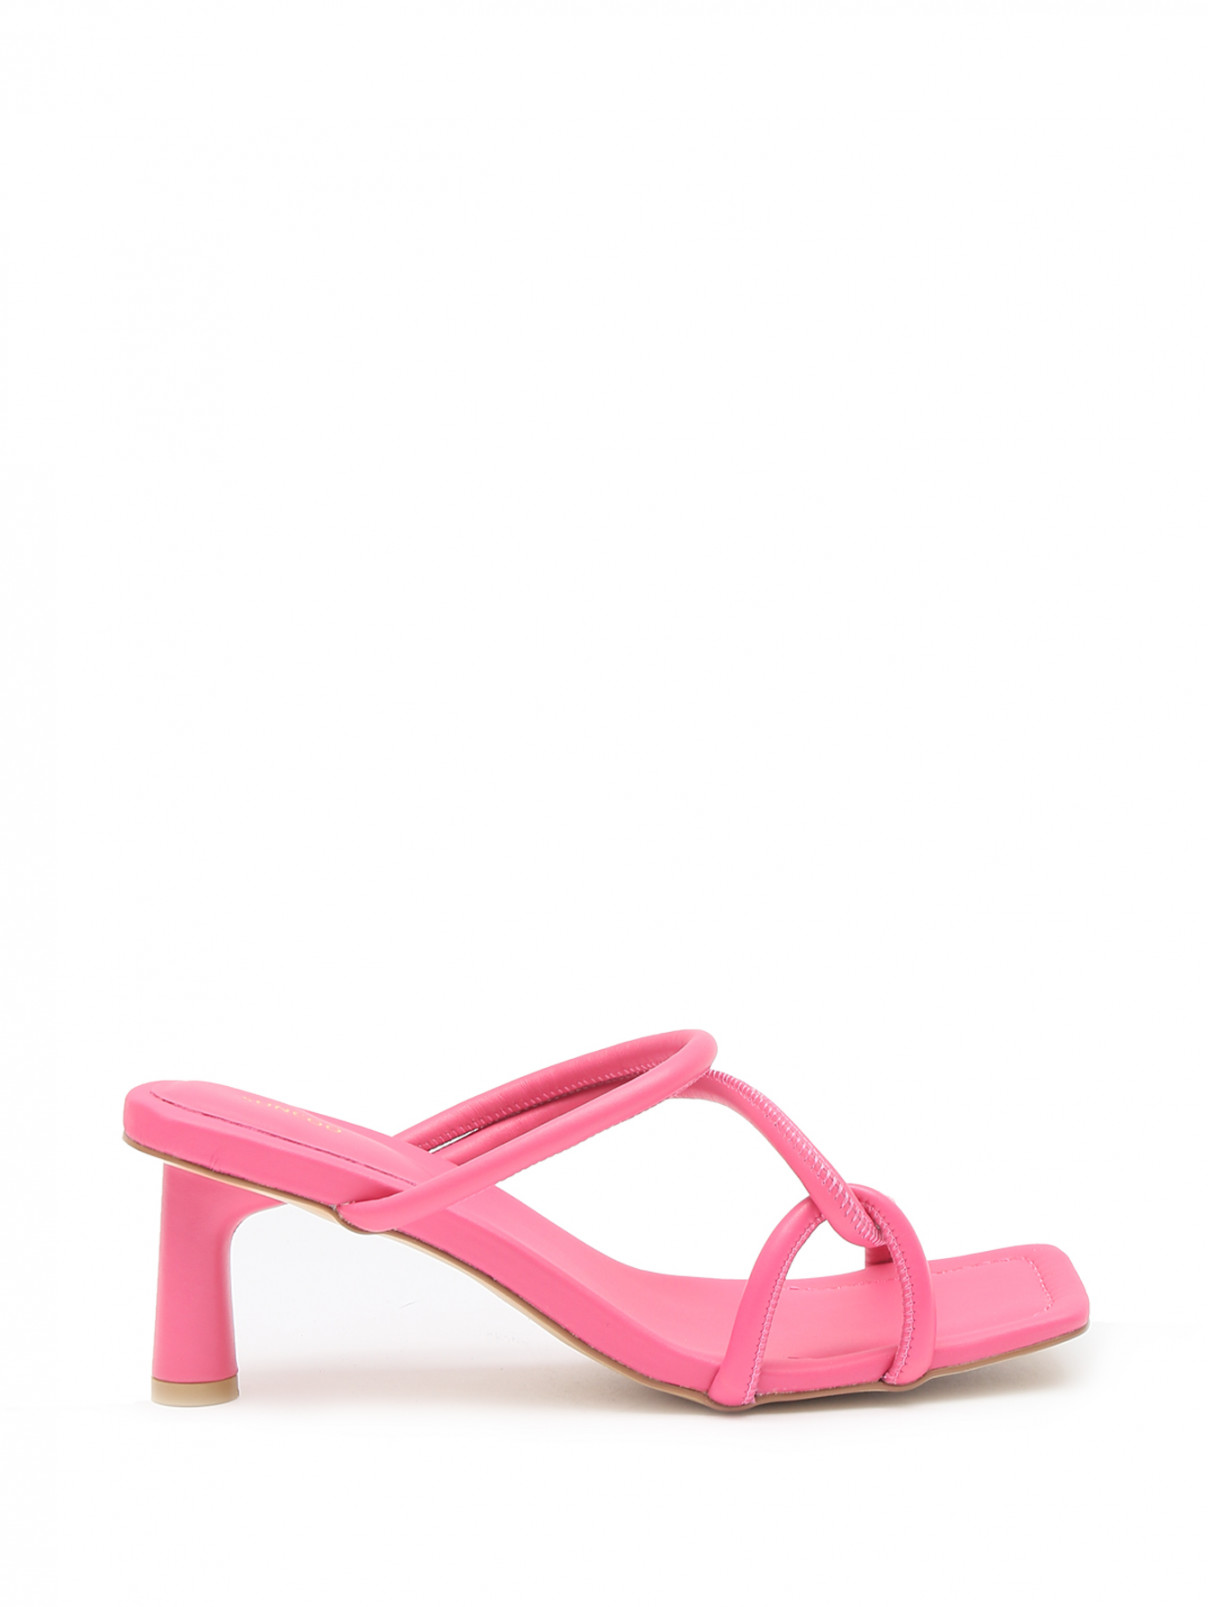 Босоножки из кожи на среднем каблуке Suncoo  –  Обтравка2  – Цвет:  Розовый